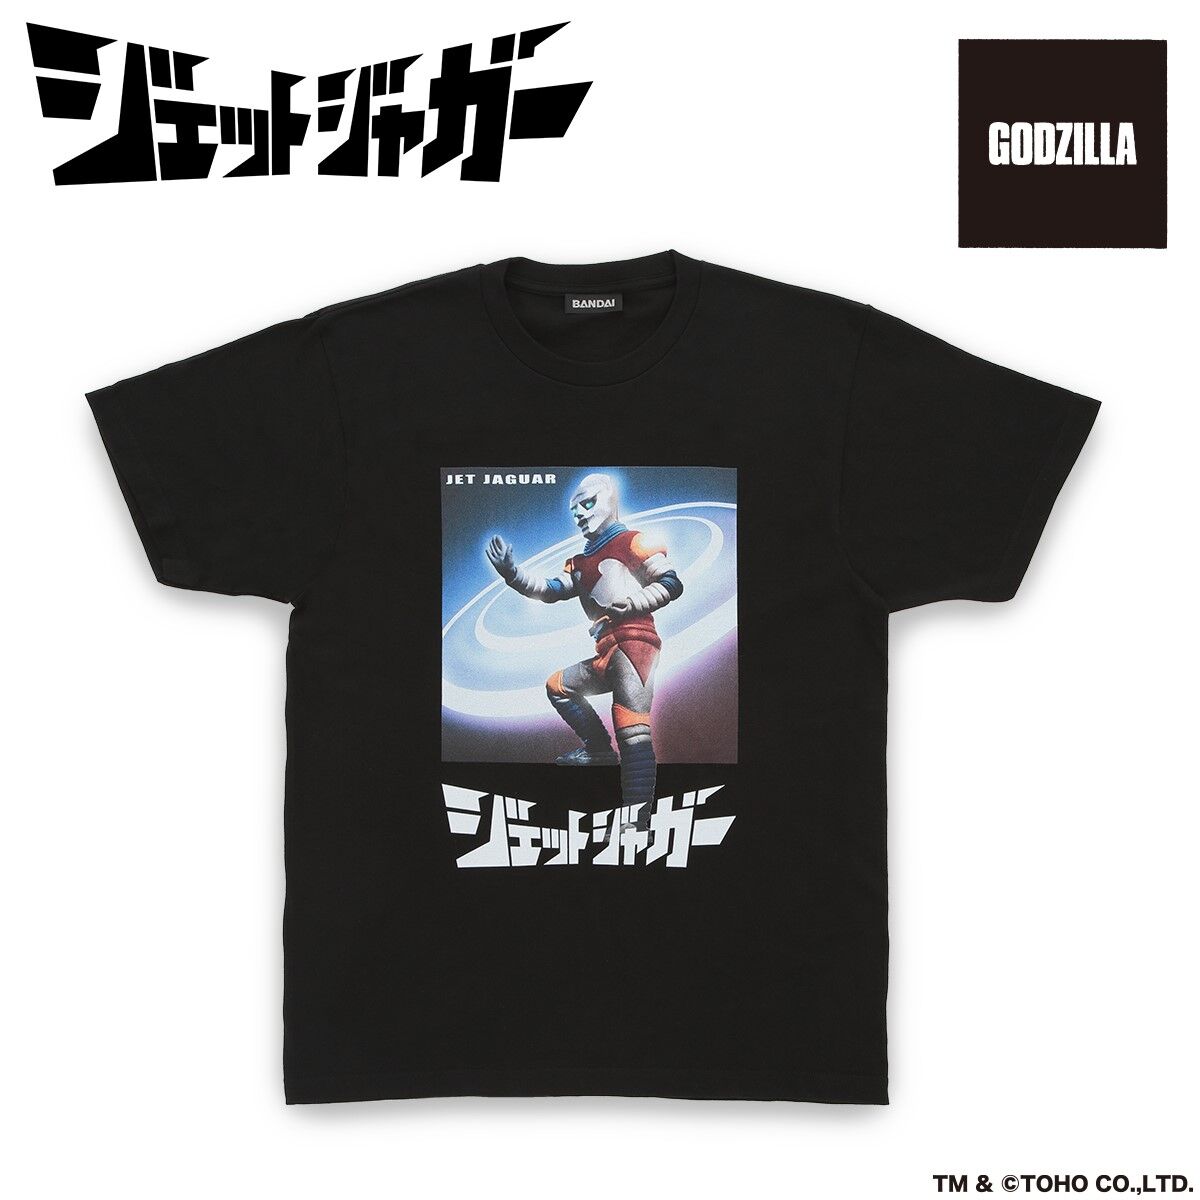 Godzilla & Jet Jaguar: Victory Handshake - T-Shirt (Classic Black) | Size: XS by Cavitycolors